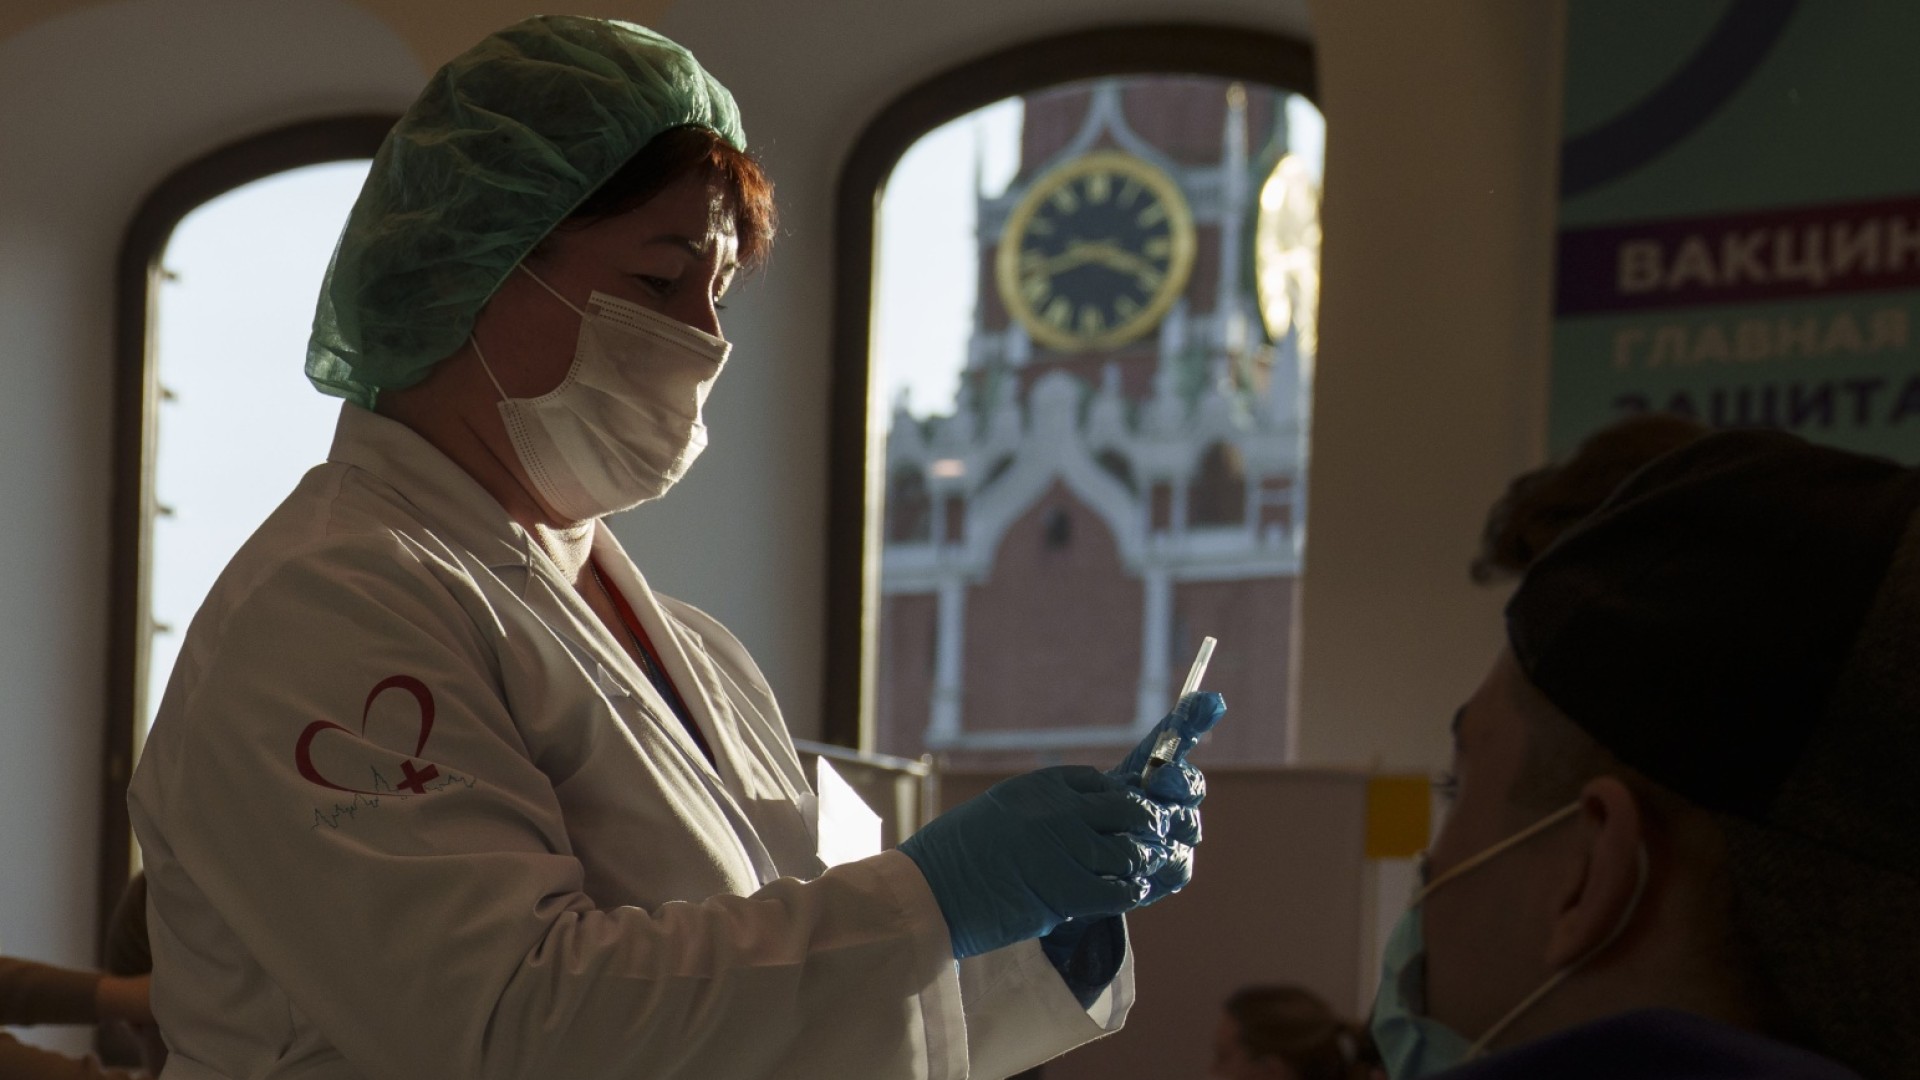 Rusya'da arkada ikonik Ortodoks mimarisi gölgesinde Covid-19 aşısı yapmaya hazırlanan bir hemşire. NBC, 2021.